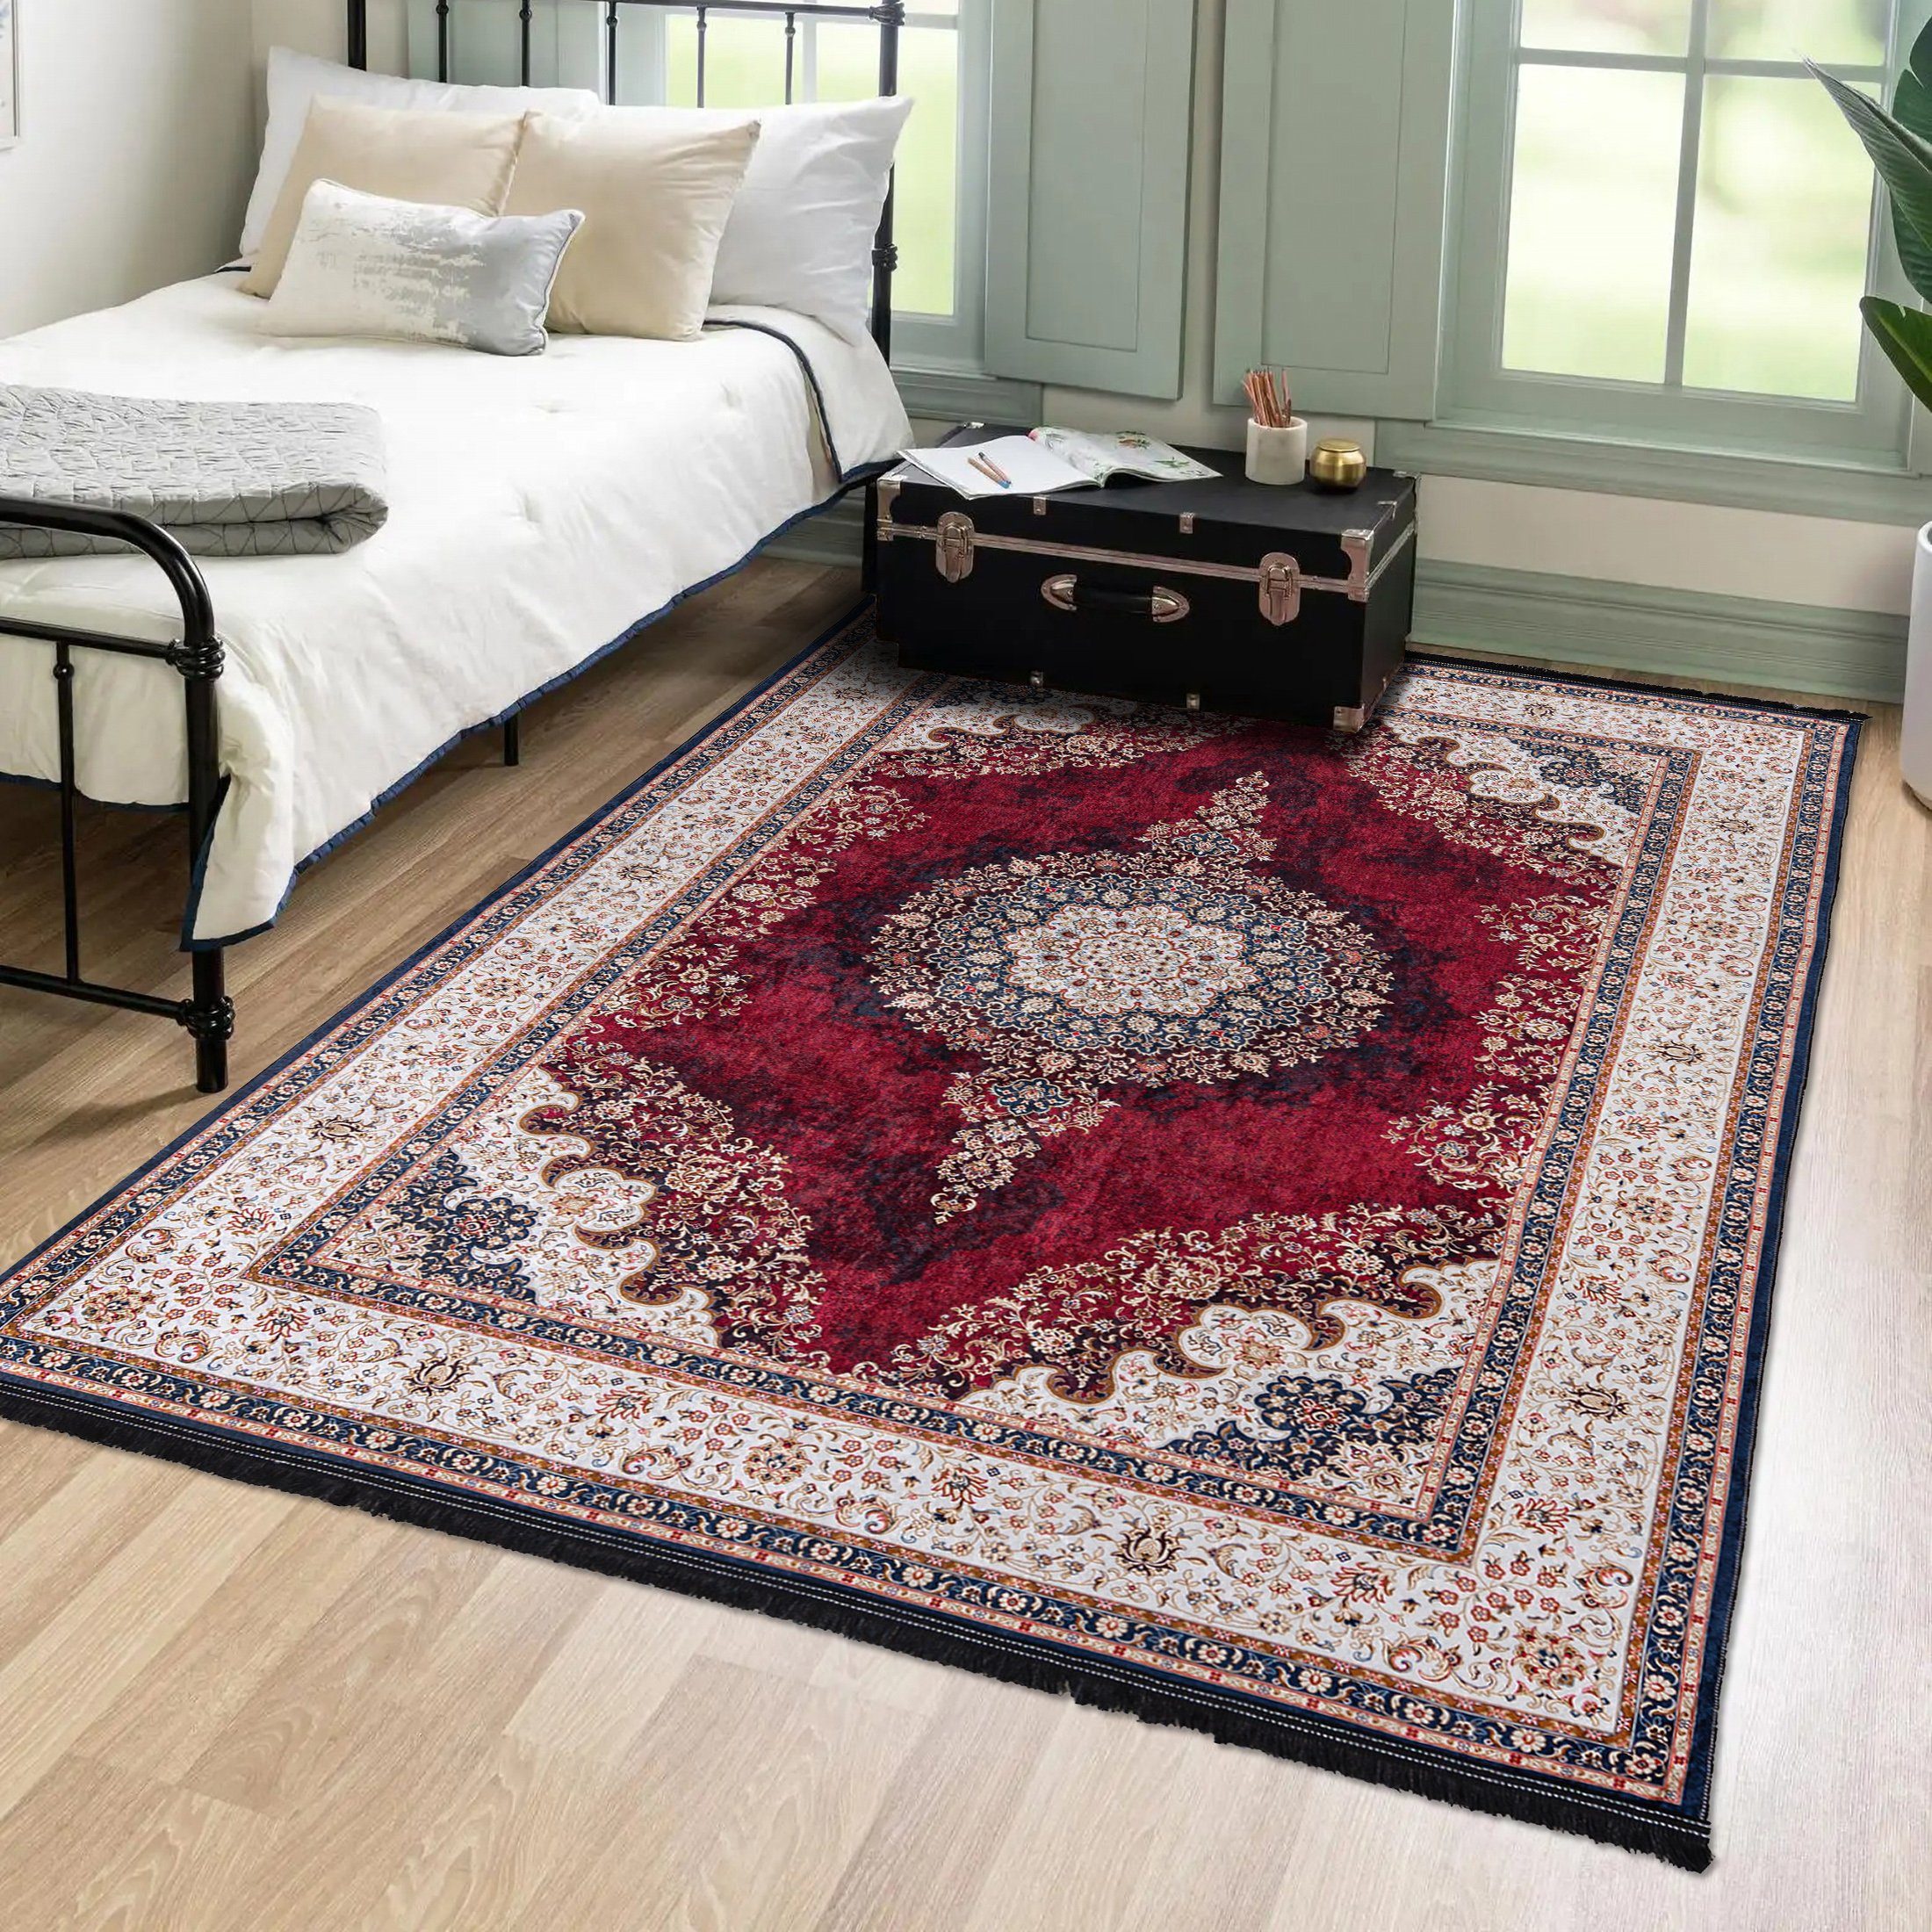 Orientteppich Orientalisch Vintage Teppich Traditioneller Orient Teppich, Mazovia, 80 x 150 cm, Kurflor, Waschbar in Waschmaschine, Höhe 5 mm, Rutschfest Rot / 36441